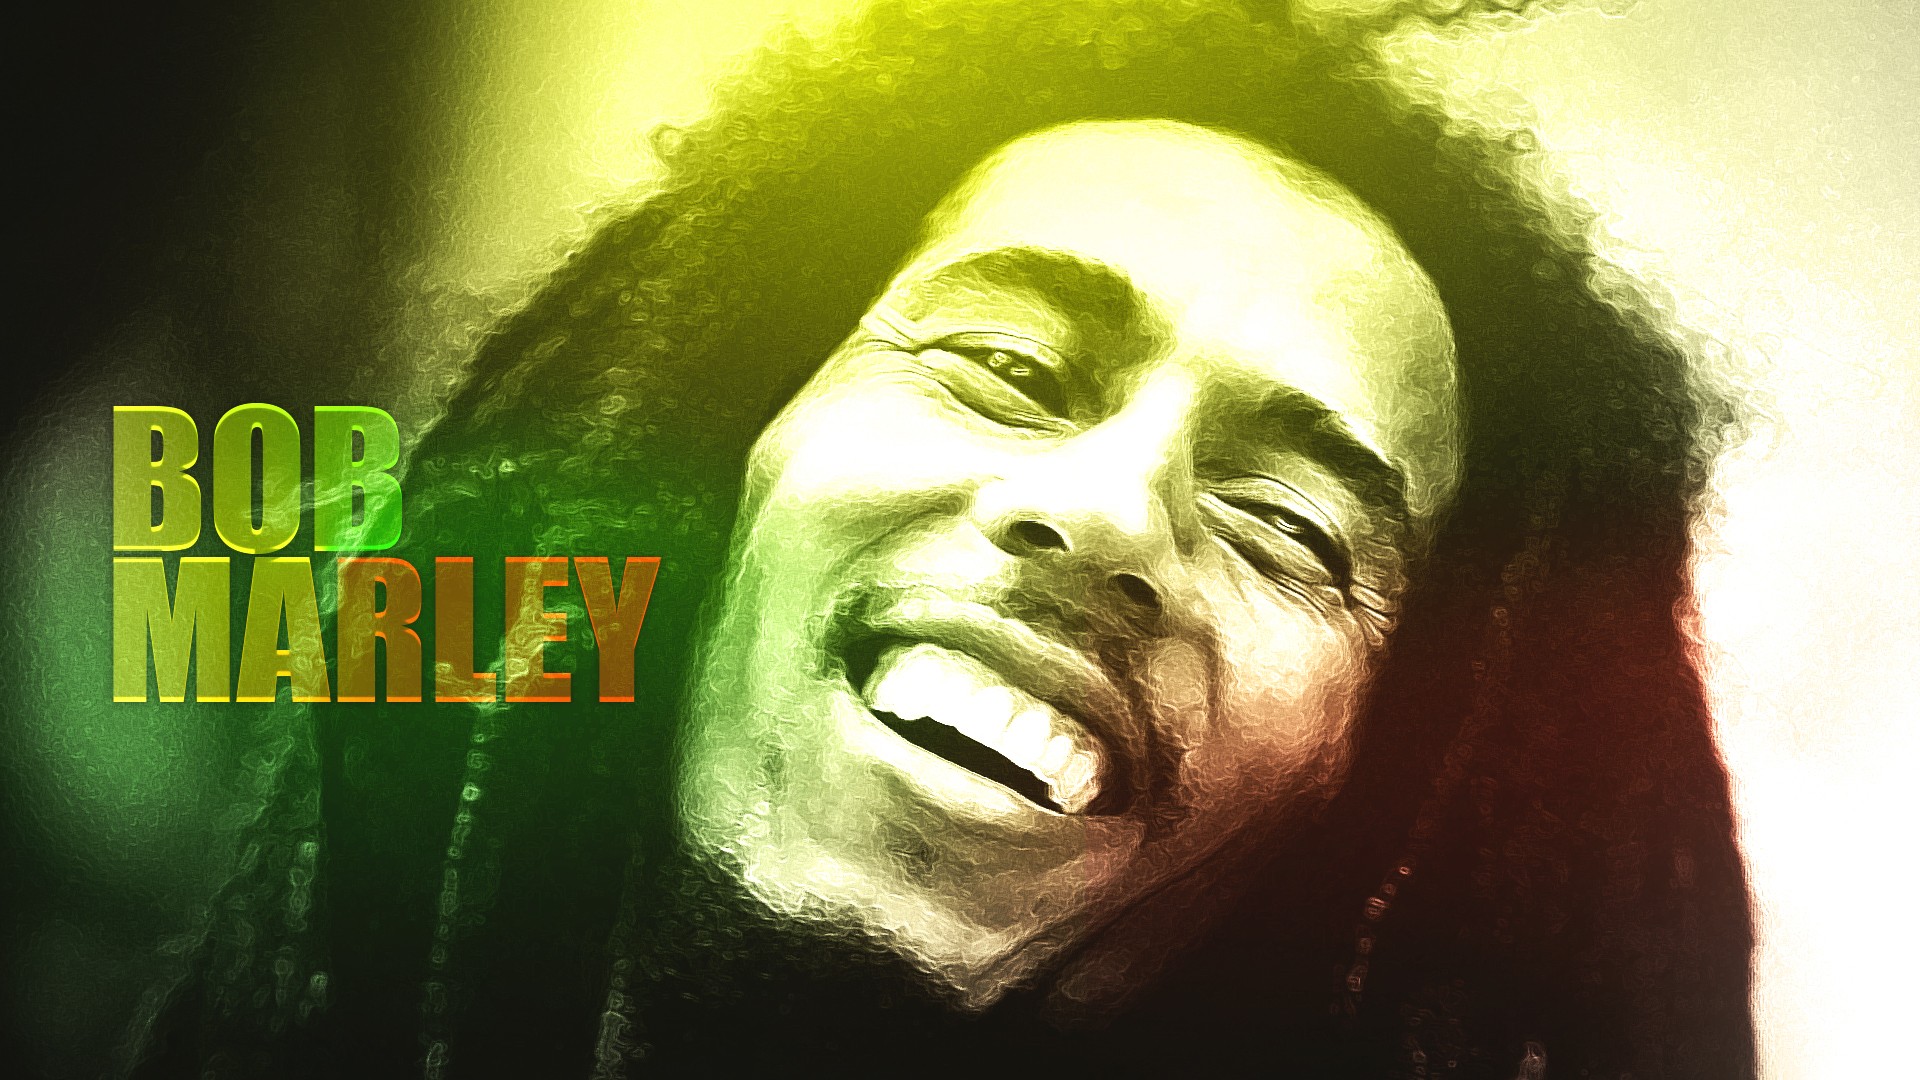 Free Bob Marley phone wallpaper by mops801 | Bob marley pictures, Bob marley,  Image bob marley